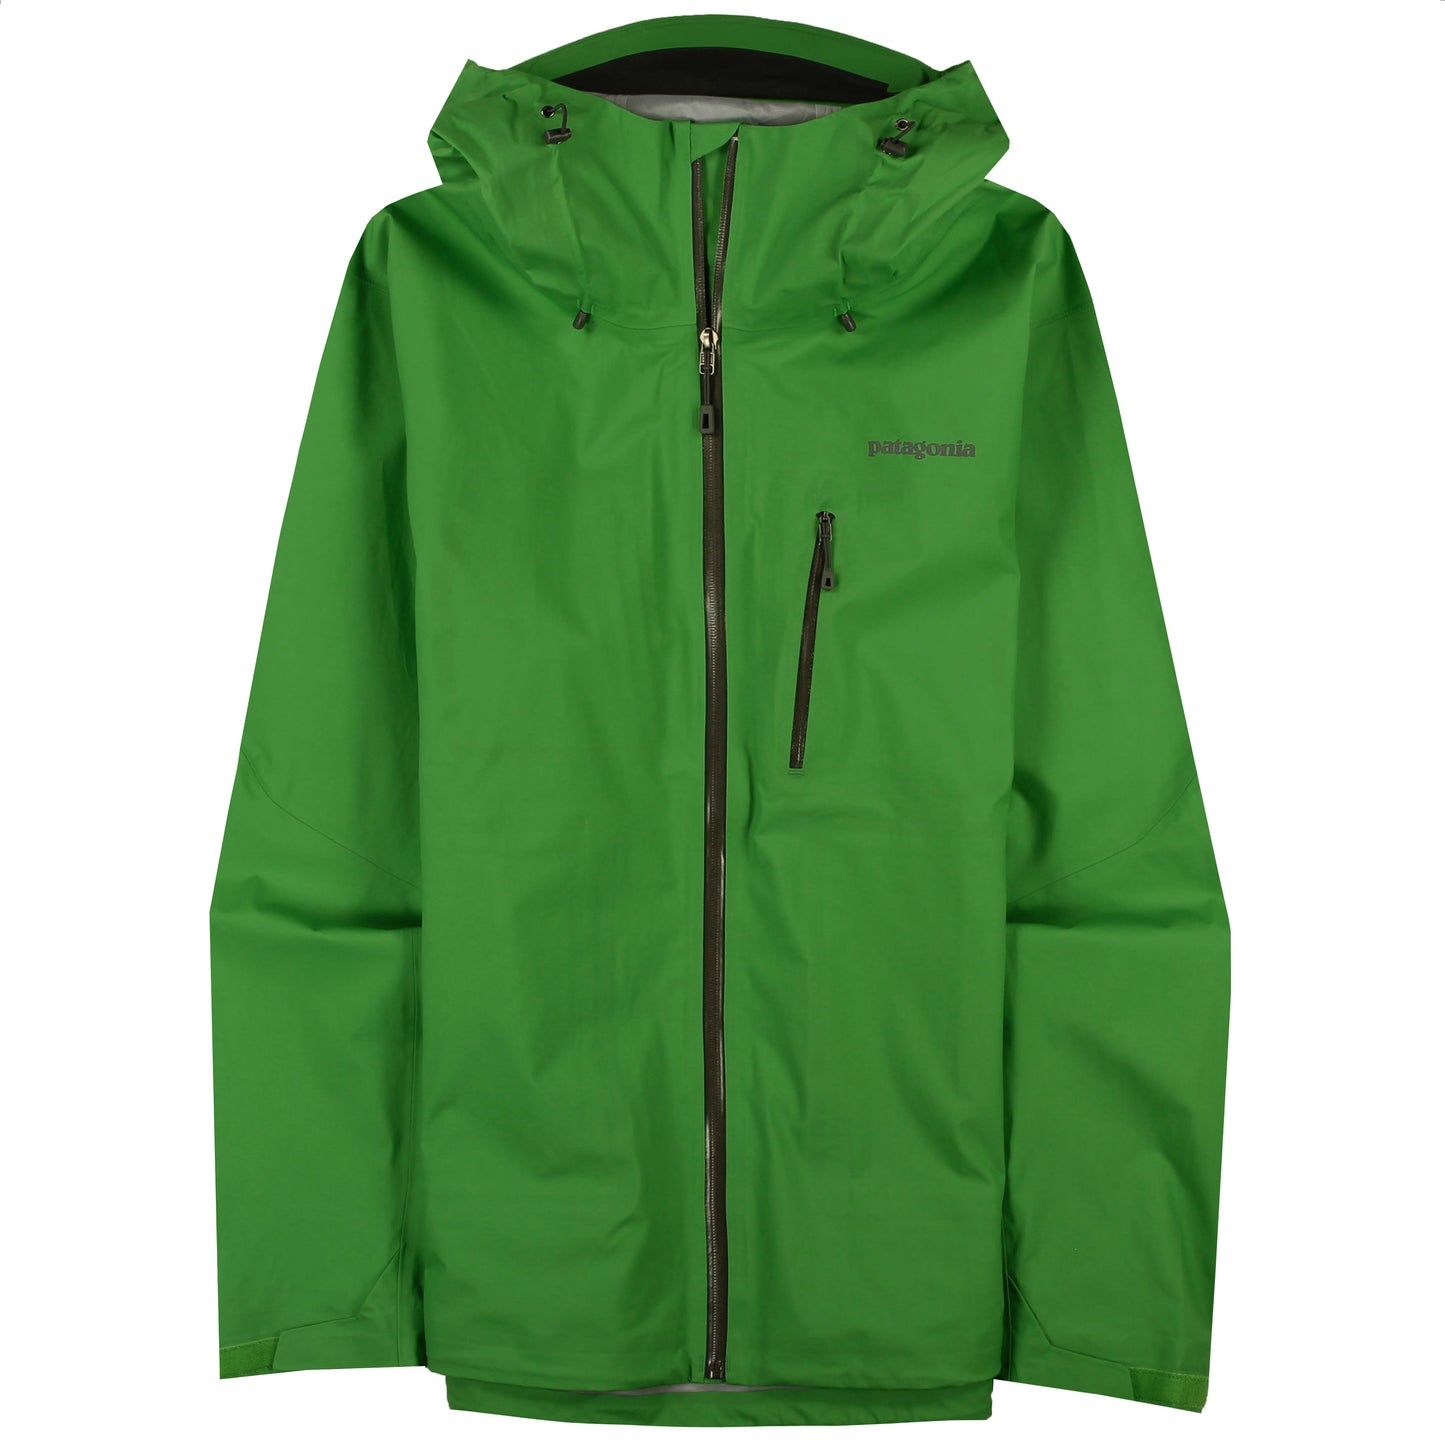 M's Leashless Jacket – Patagonia Worn Wear